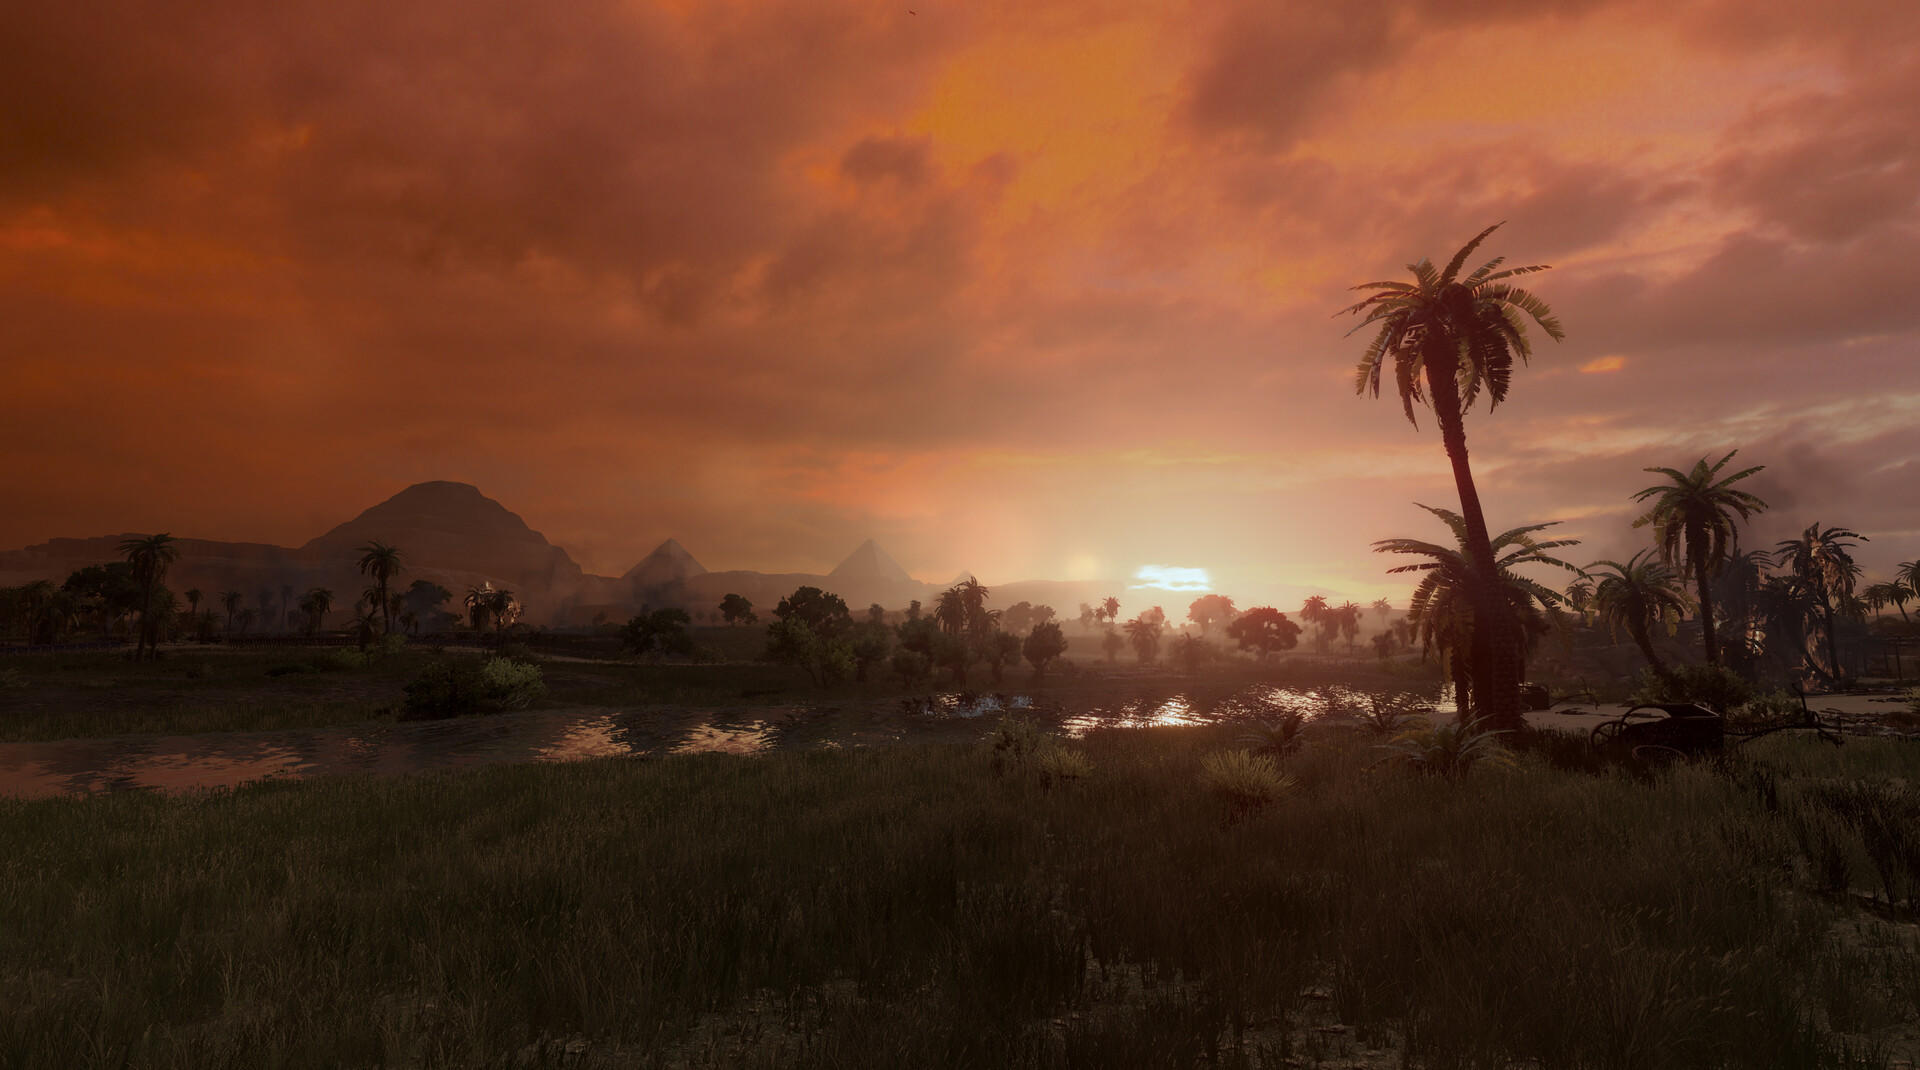 Total War: PHARAOH screenshot game